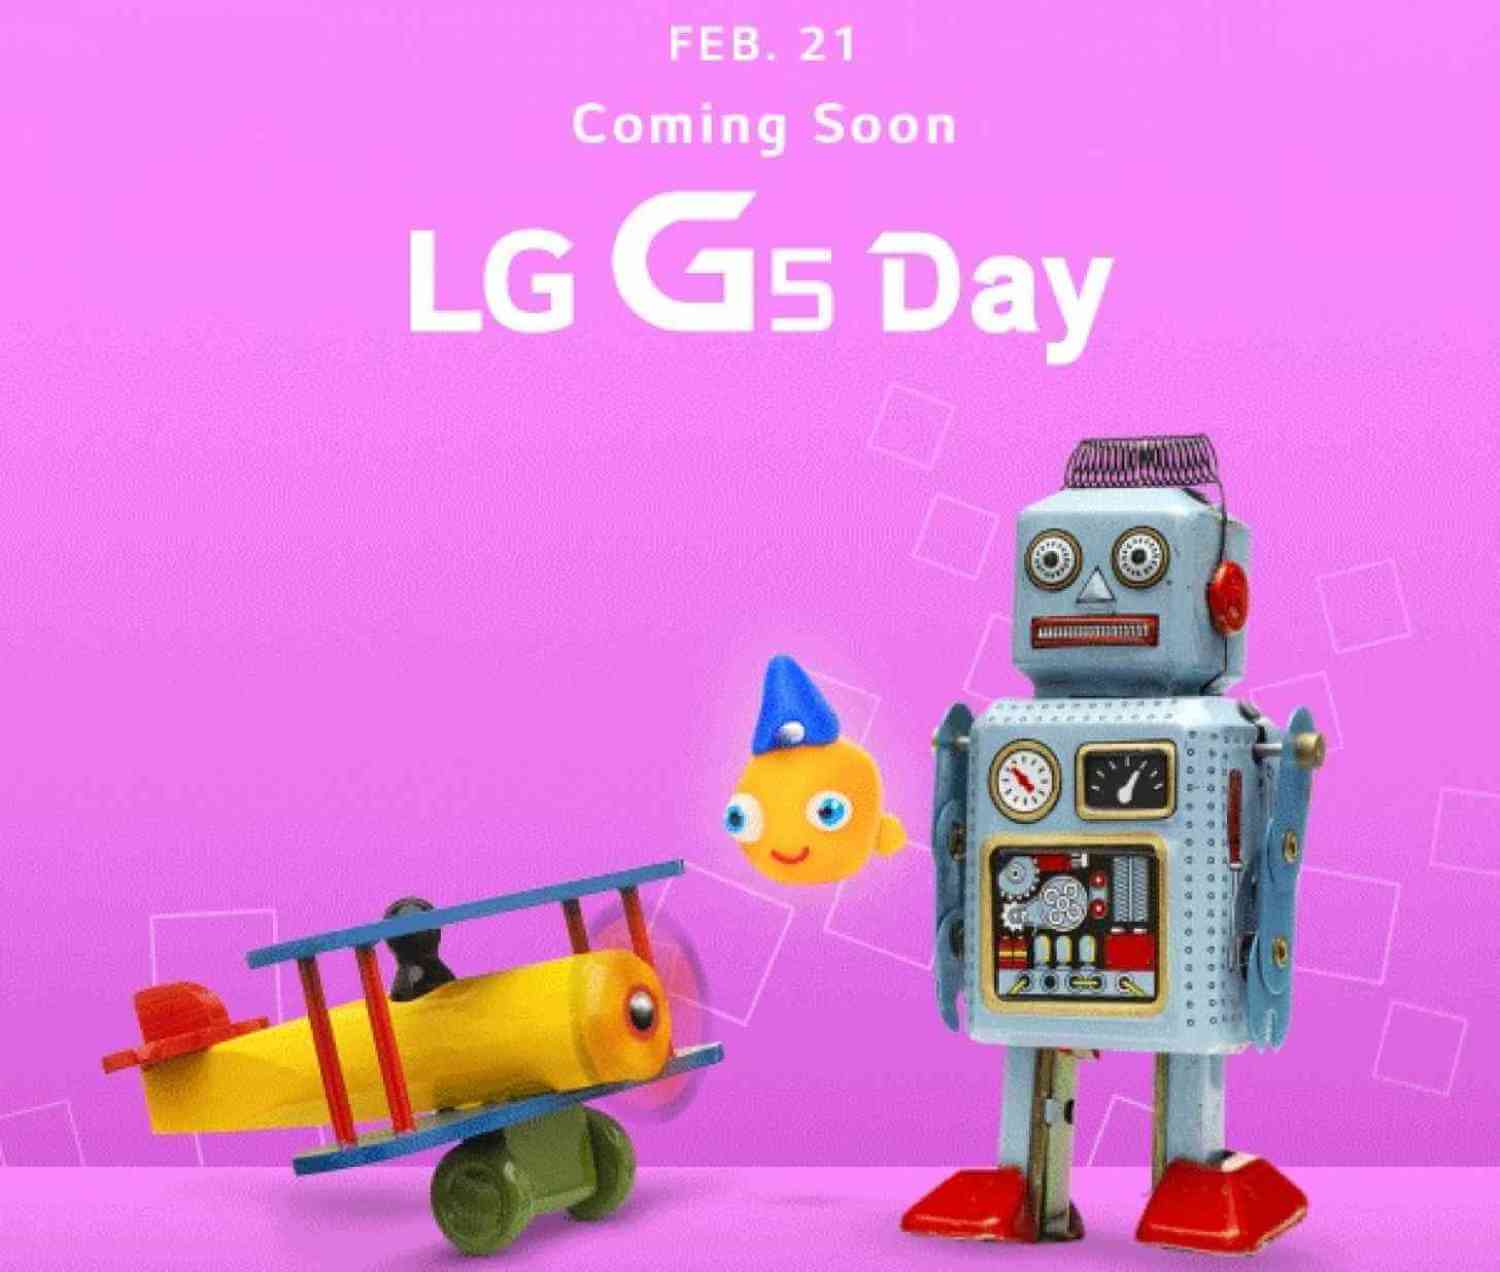 LG G5 Day